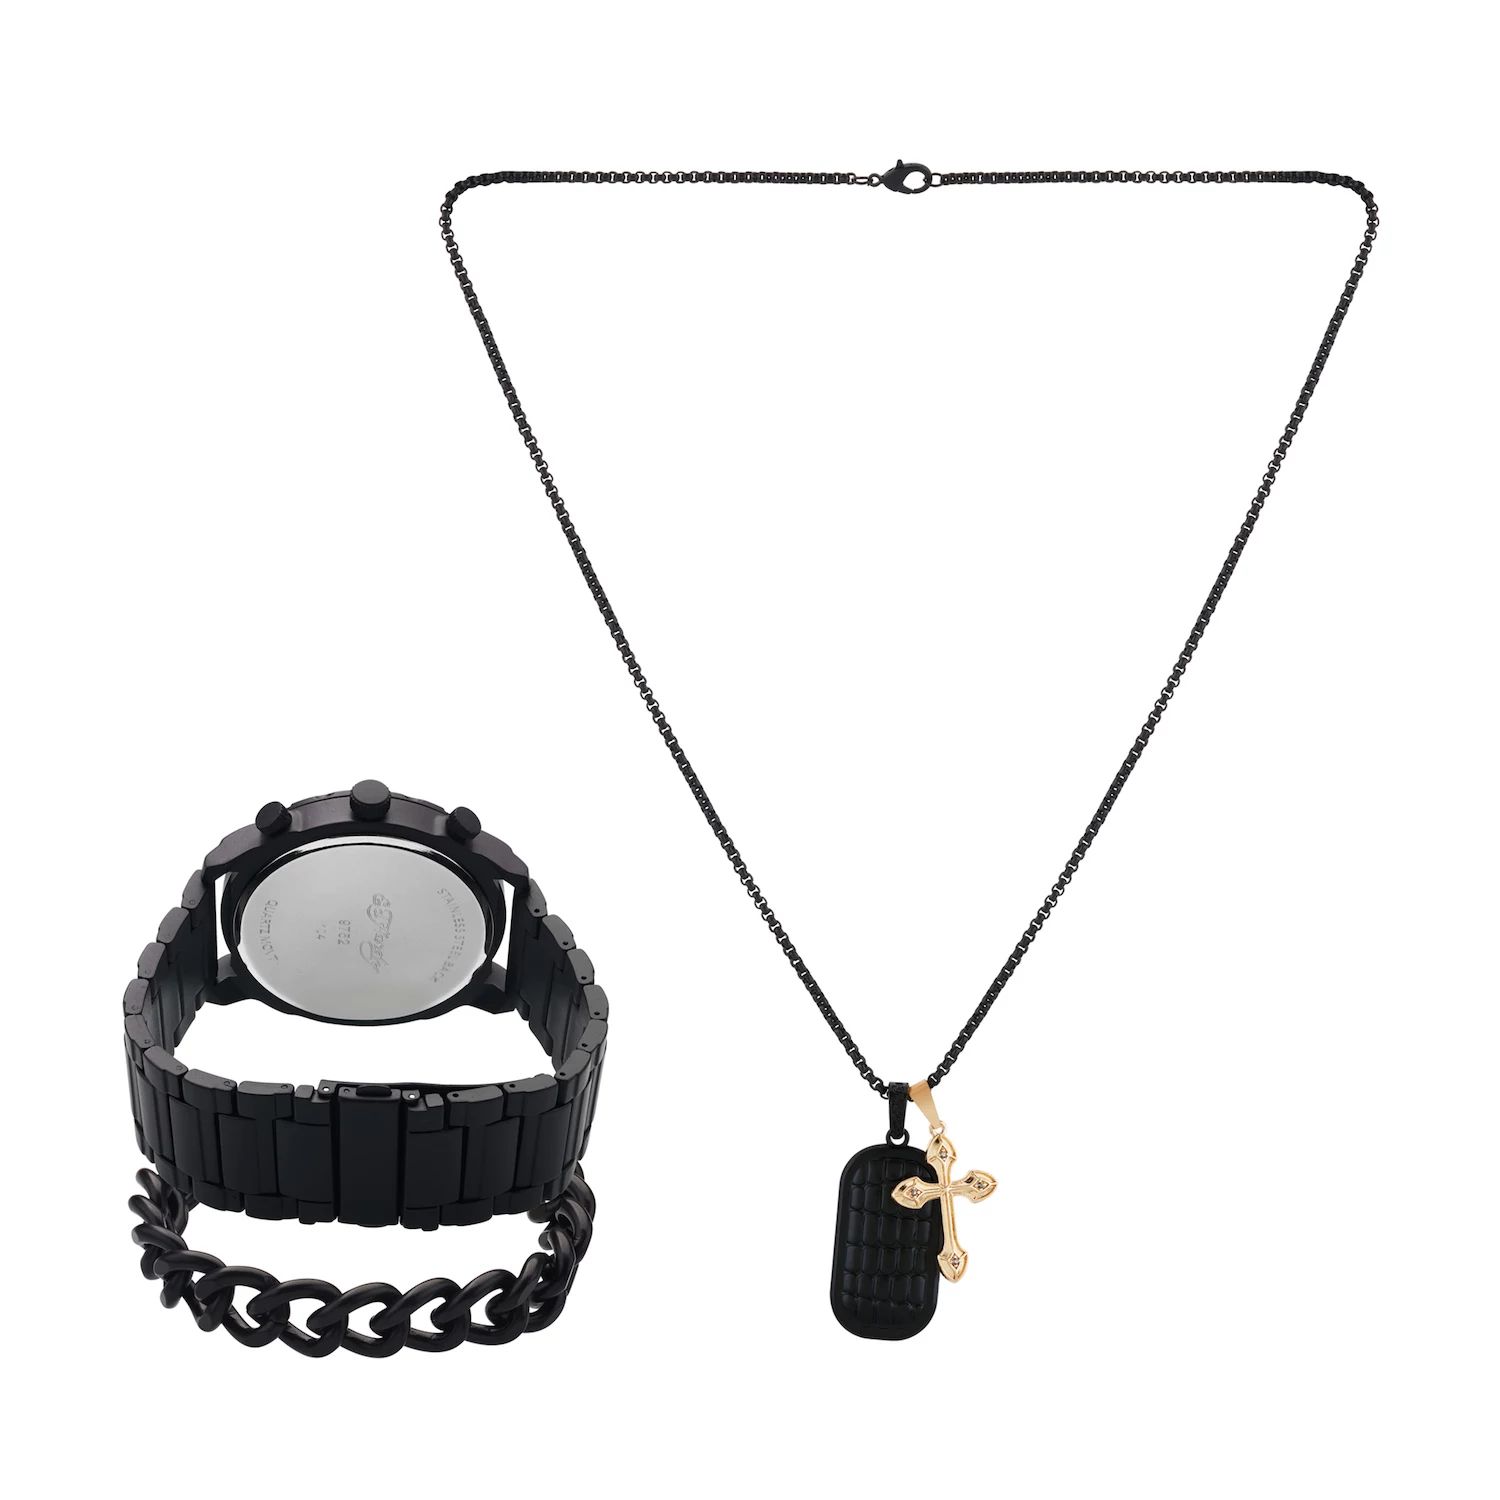 Подарочный набор из часов и ожерелья с черным металлическим браслетом 50 мм Ed Hardy кроссовки ed hardy fold ed runner black white